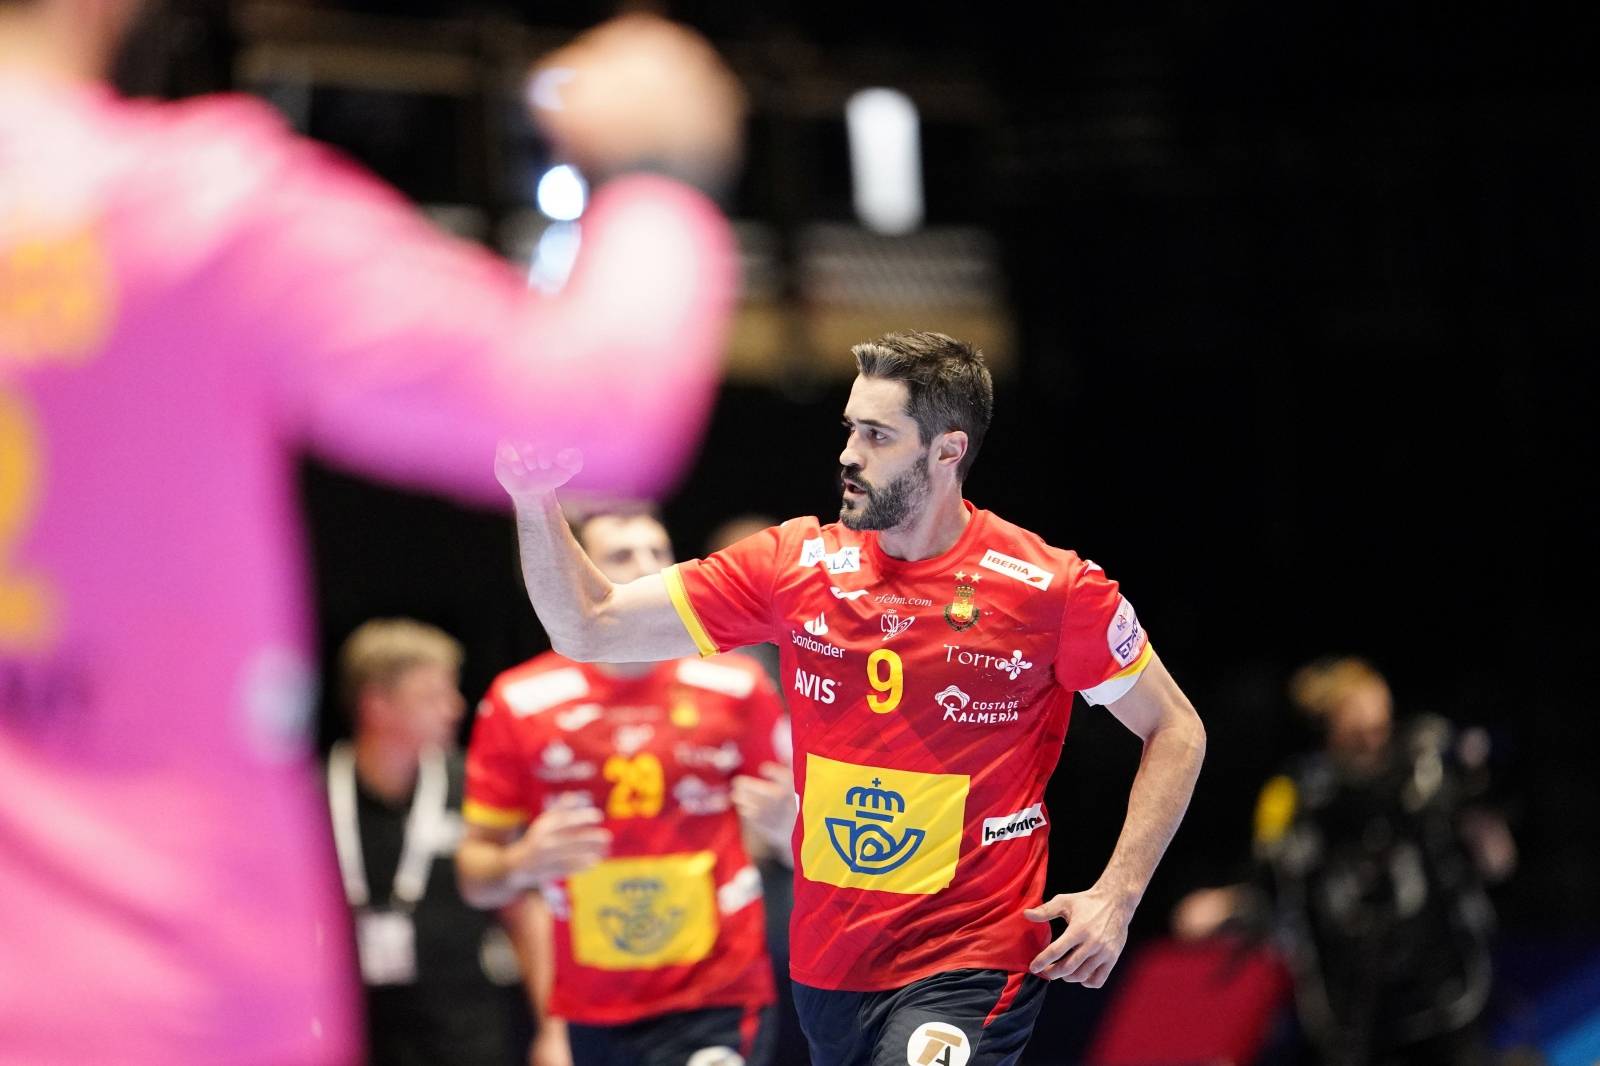 2020 EHF European Men's Handball Championship - Spain v Latvia